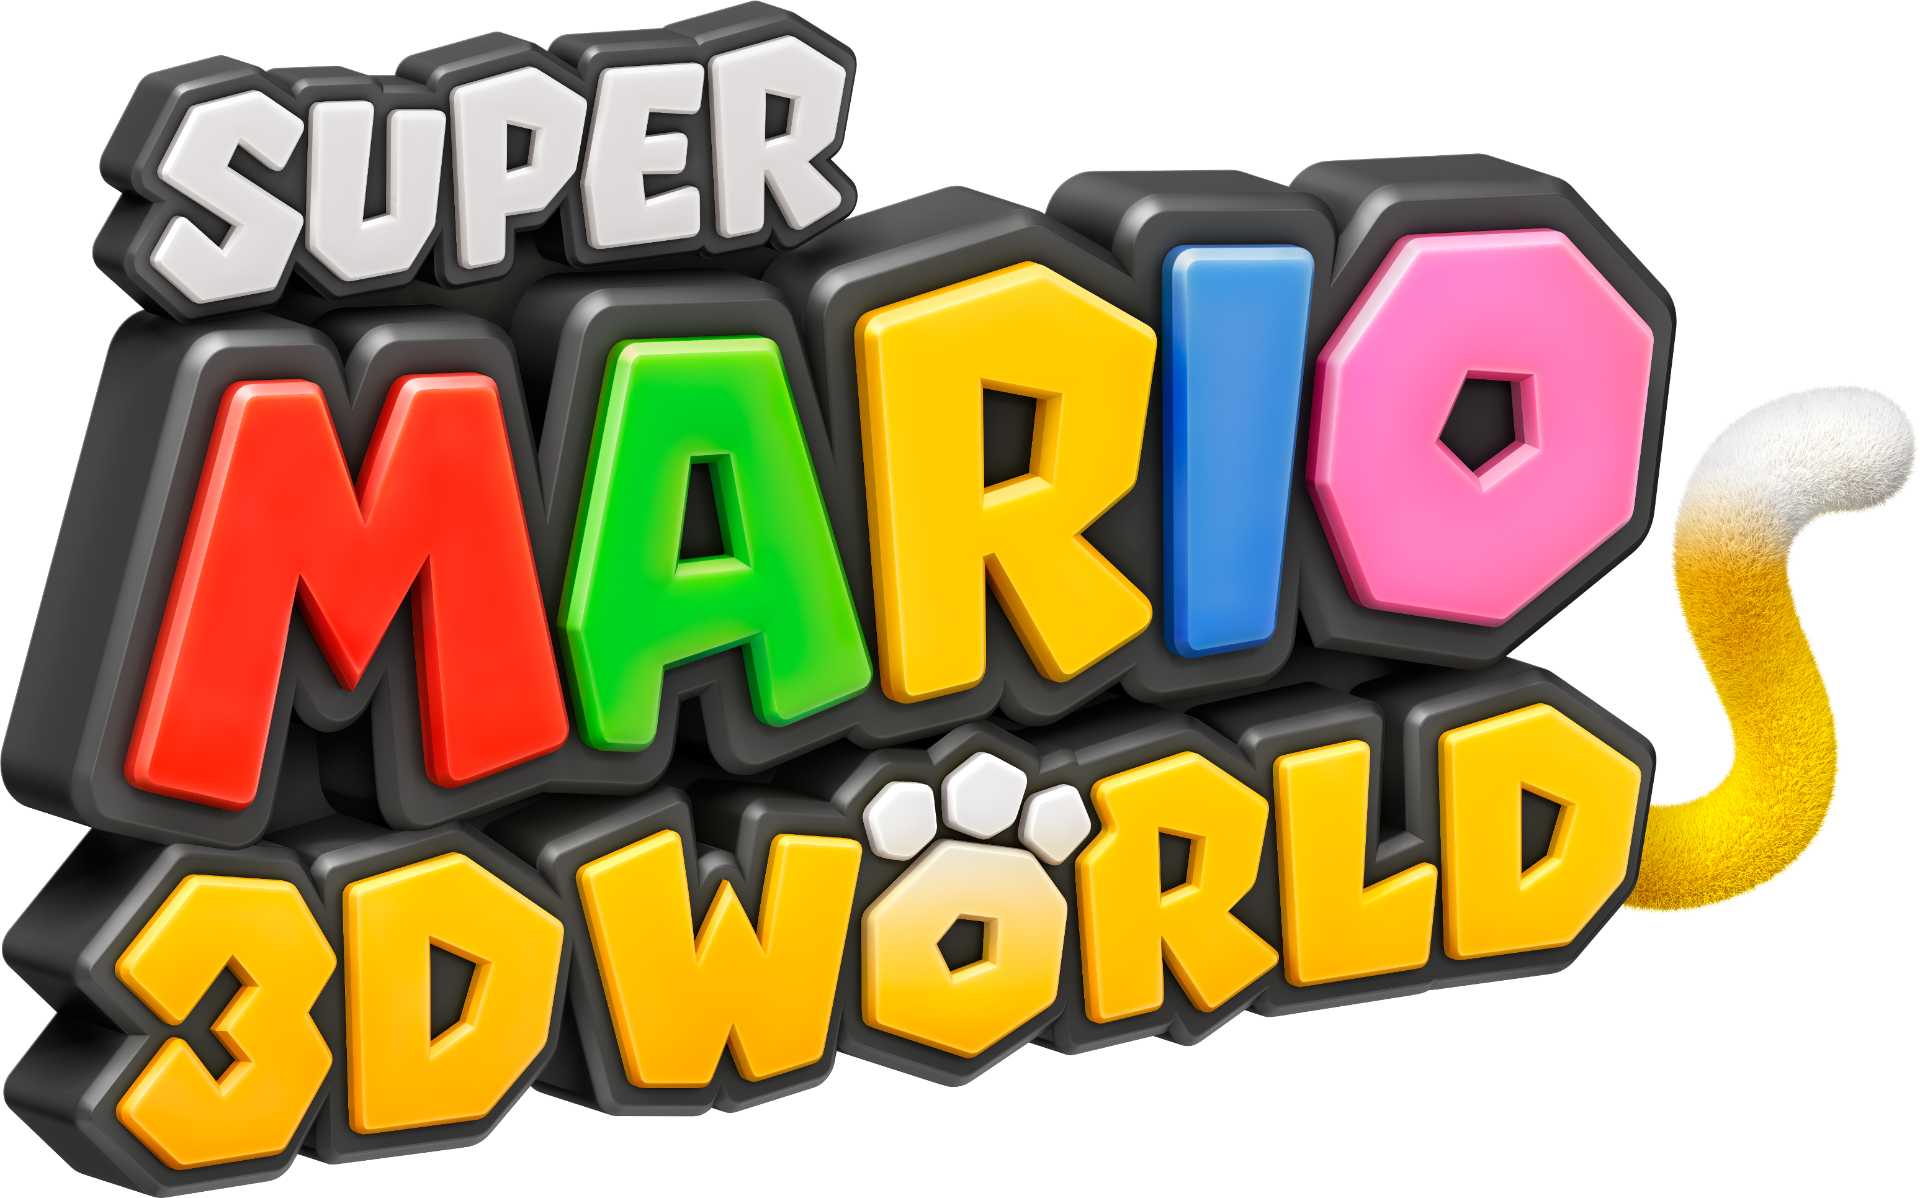 super mario 3d world apk download